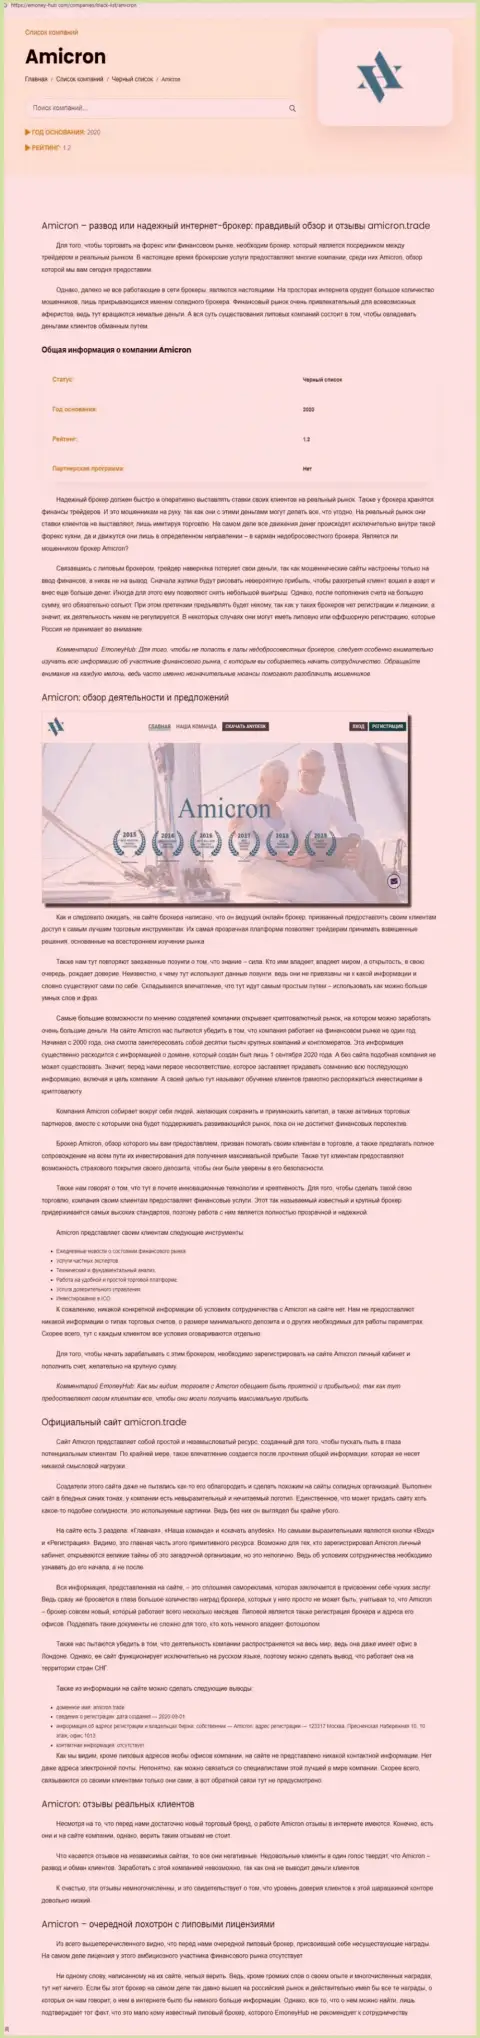 Амикрон - нахальный обман клиентов (обзорная статья противозаконных комбинаций)